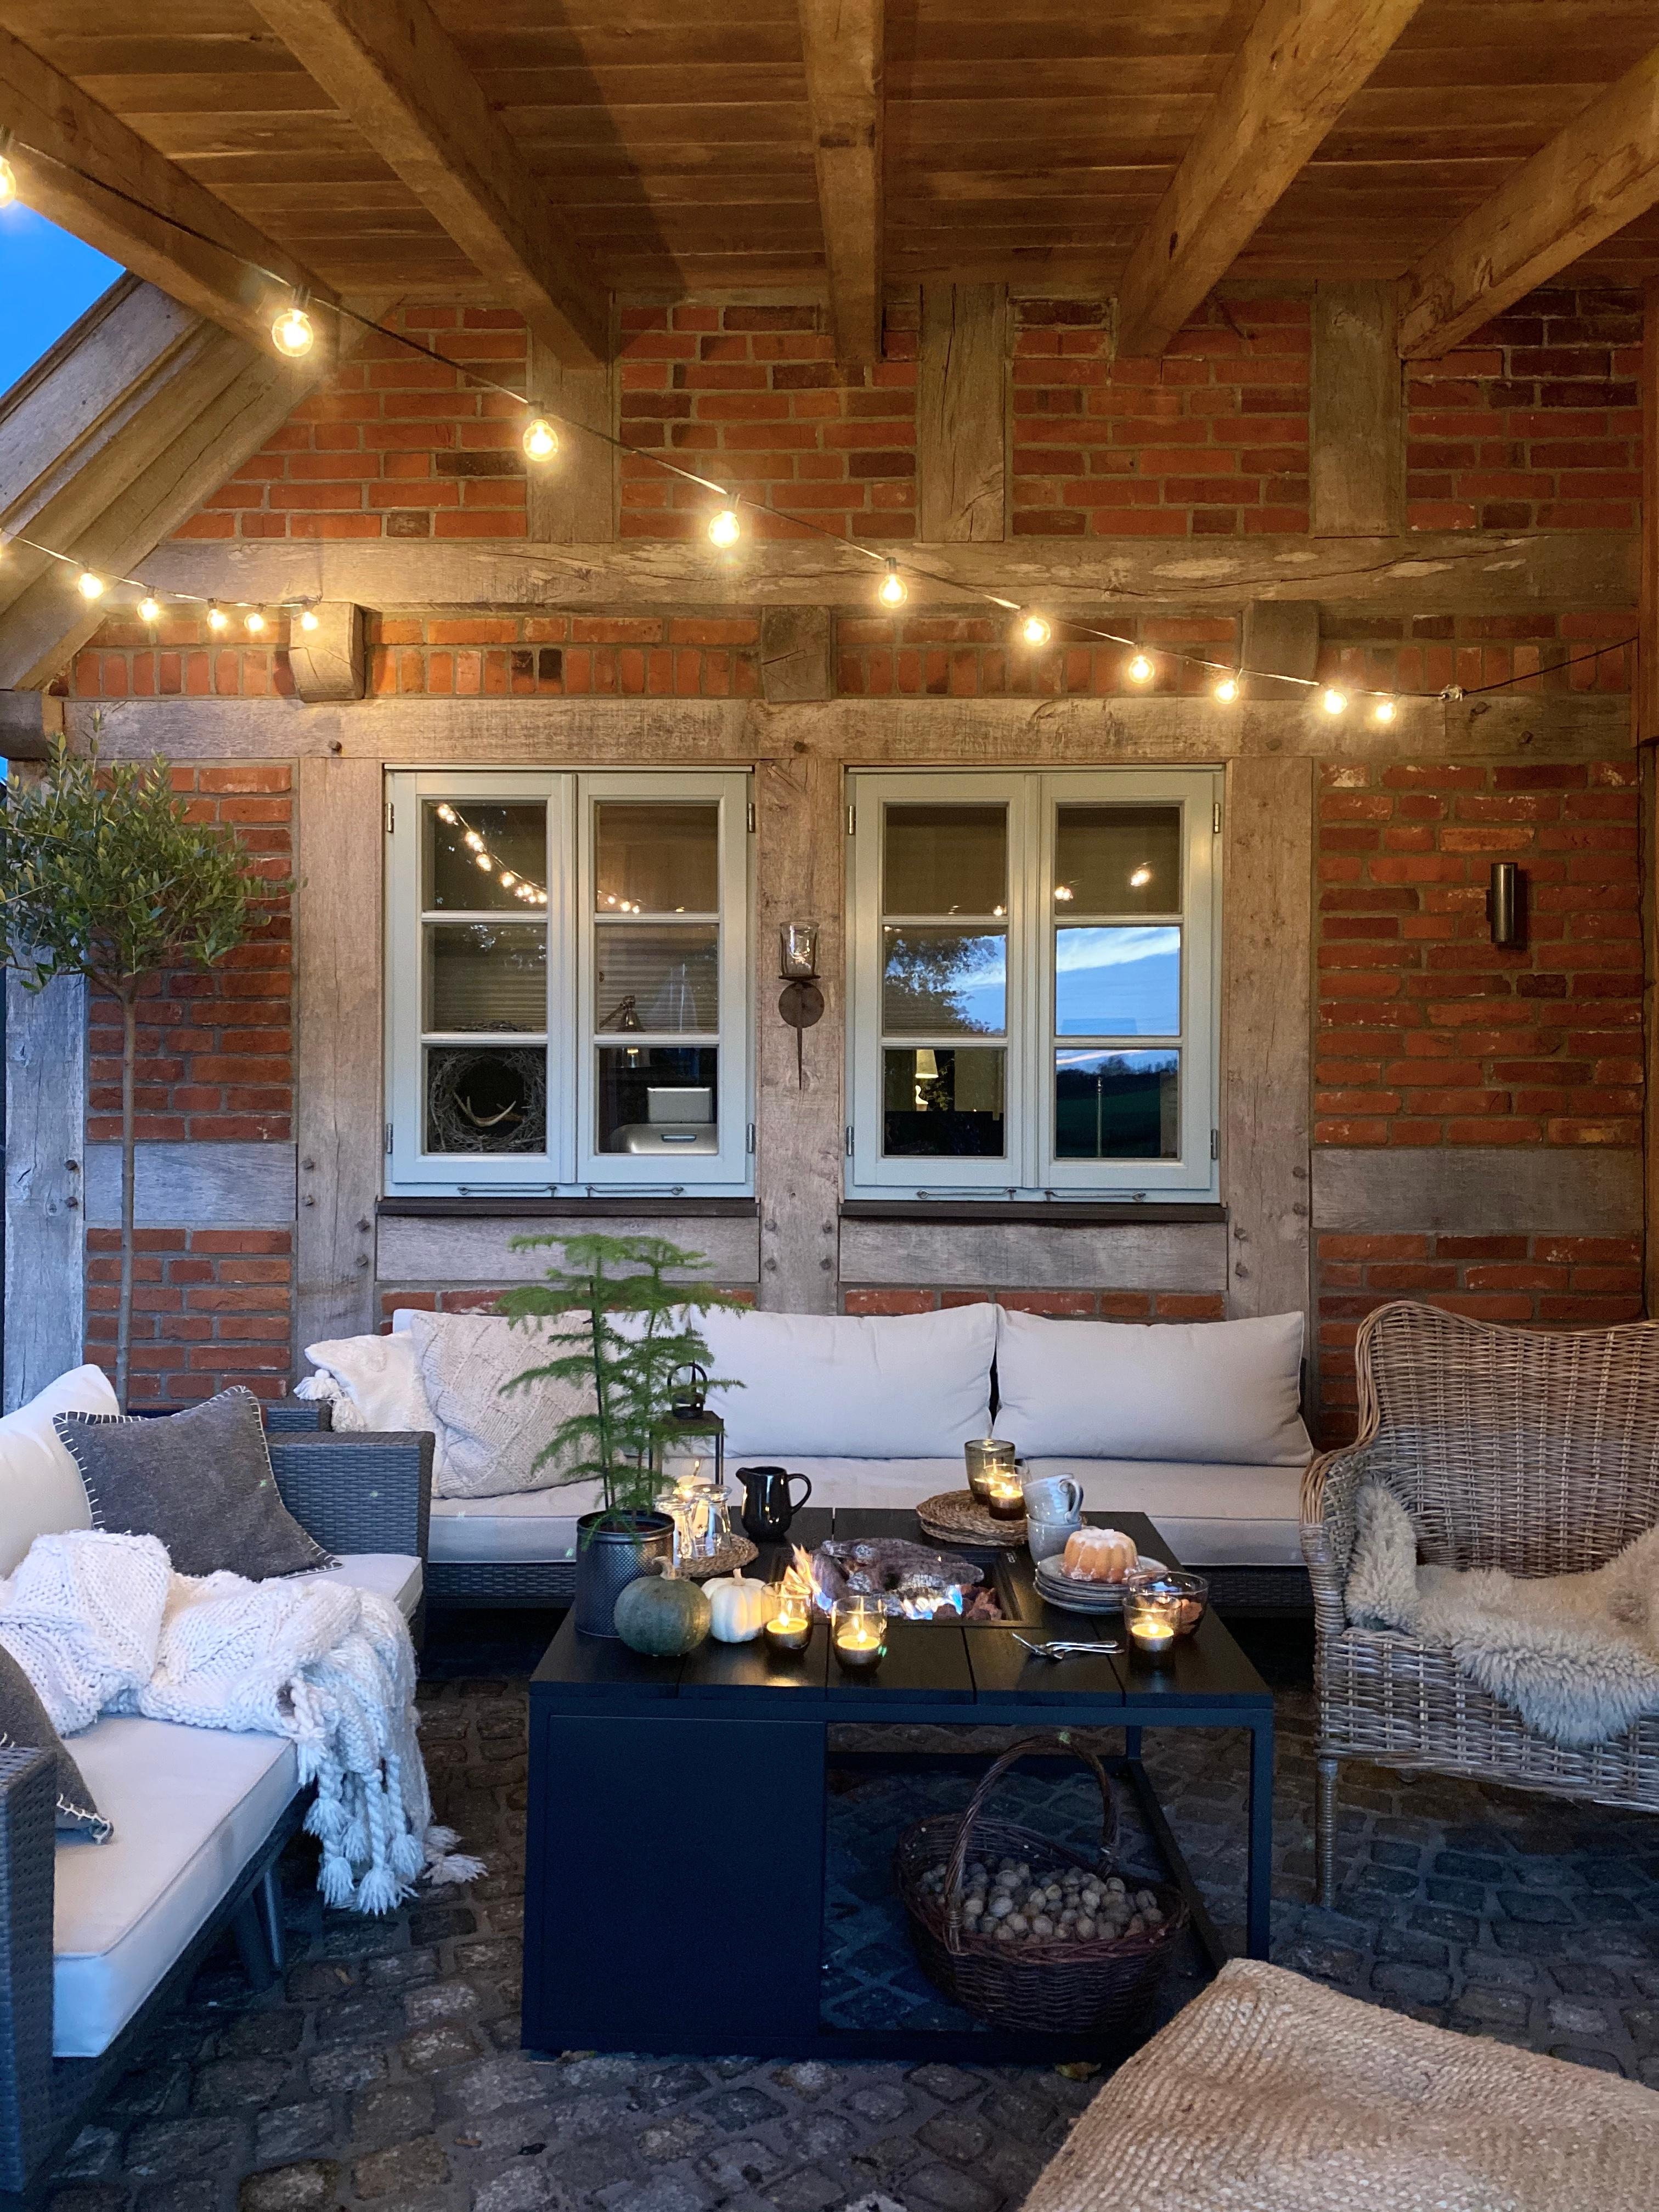 #terrasse #fachwerkhaus #fachwerk #loungemöbel #cottagestyle #herbst #cozy 